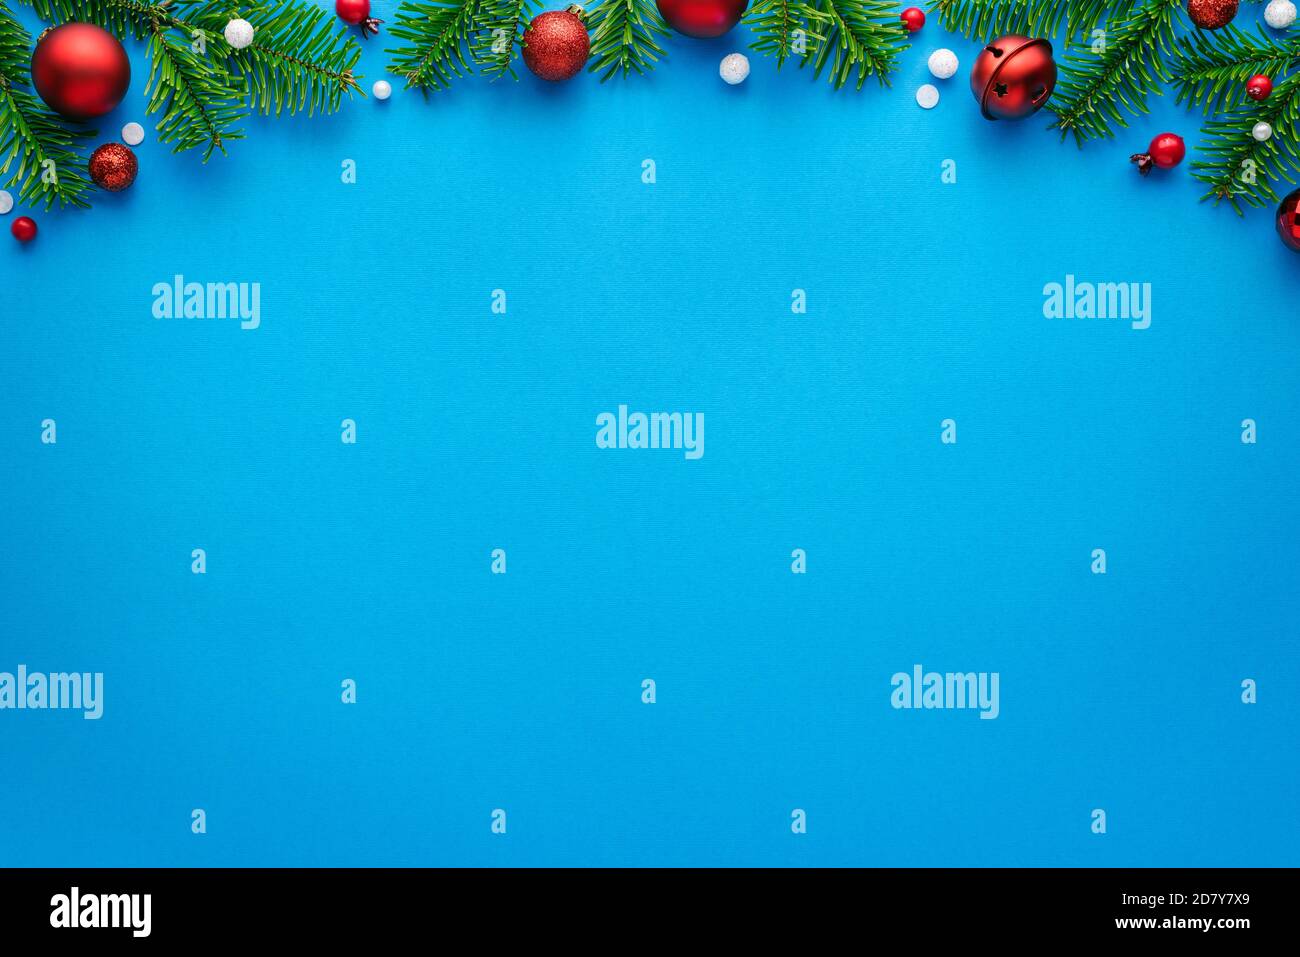 Weihnachtskarte mit Tannenschmuck auf blauem Hintergrund. Draufsicht mit Platz für festliche Texte Stockfoto